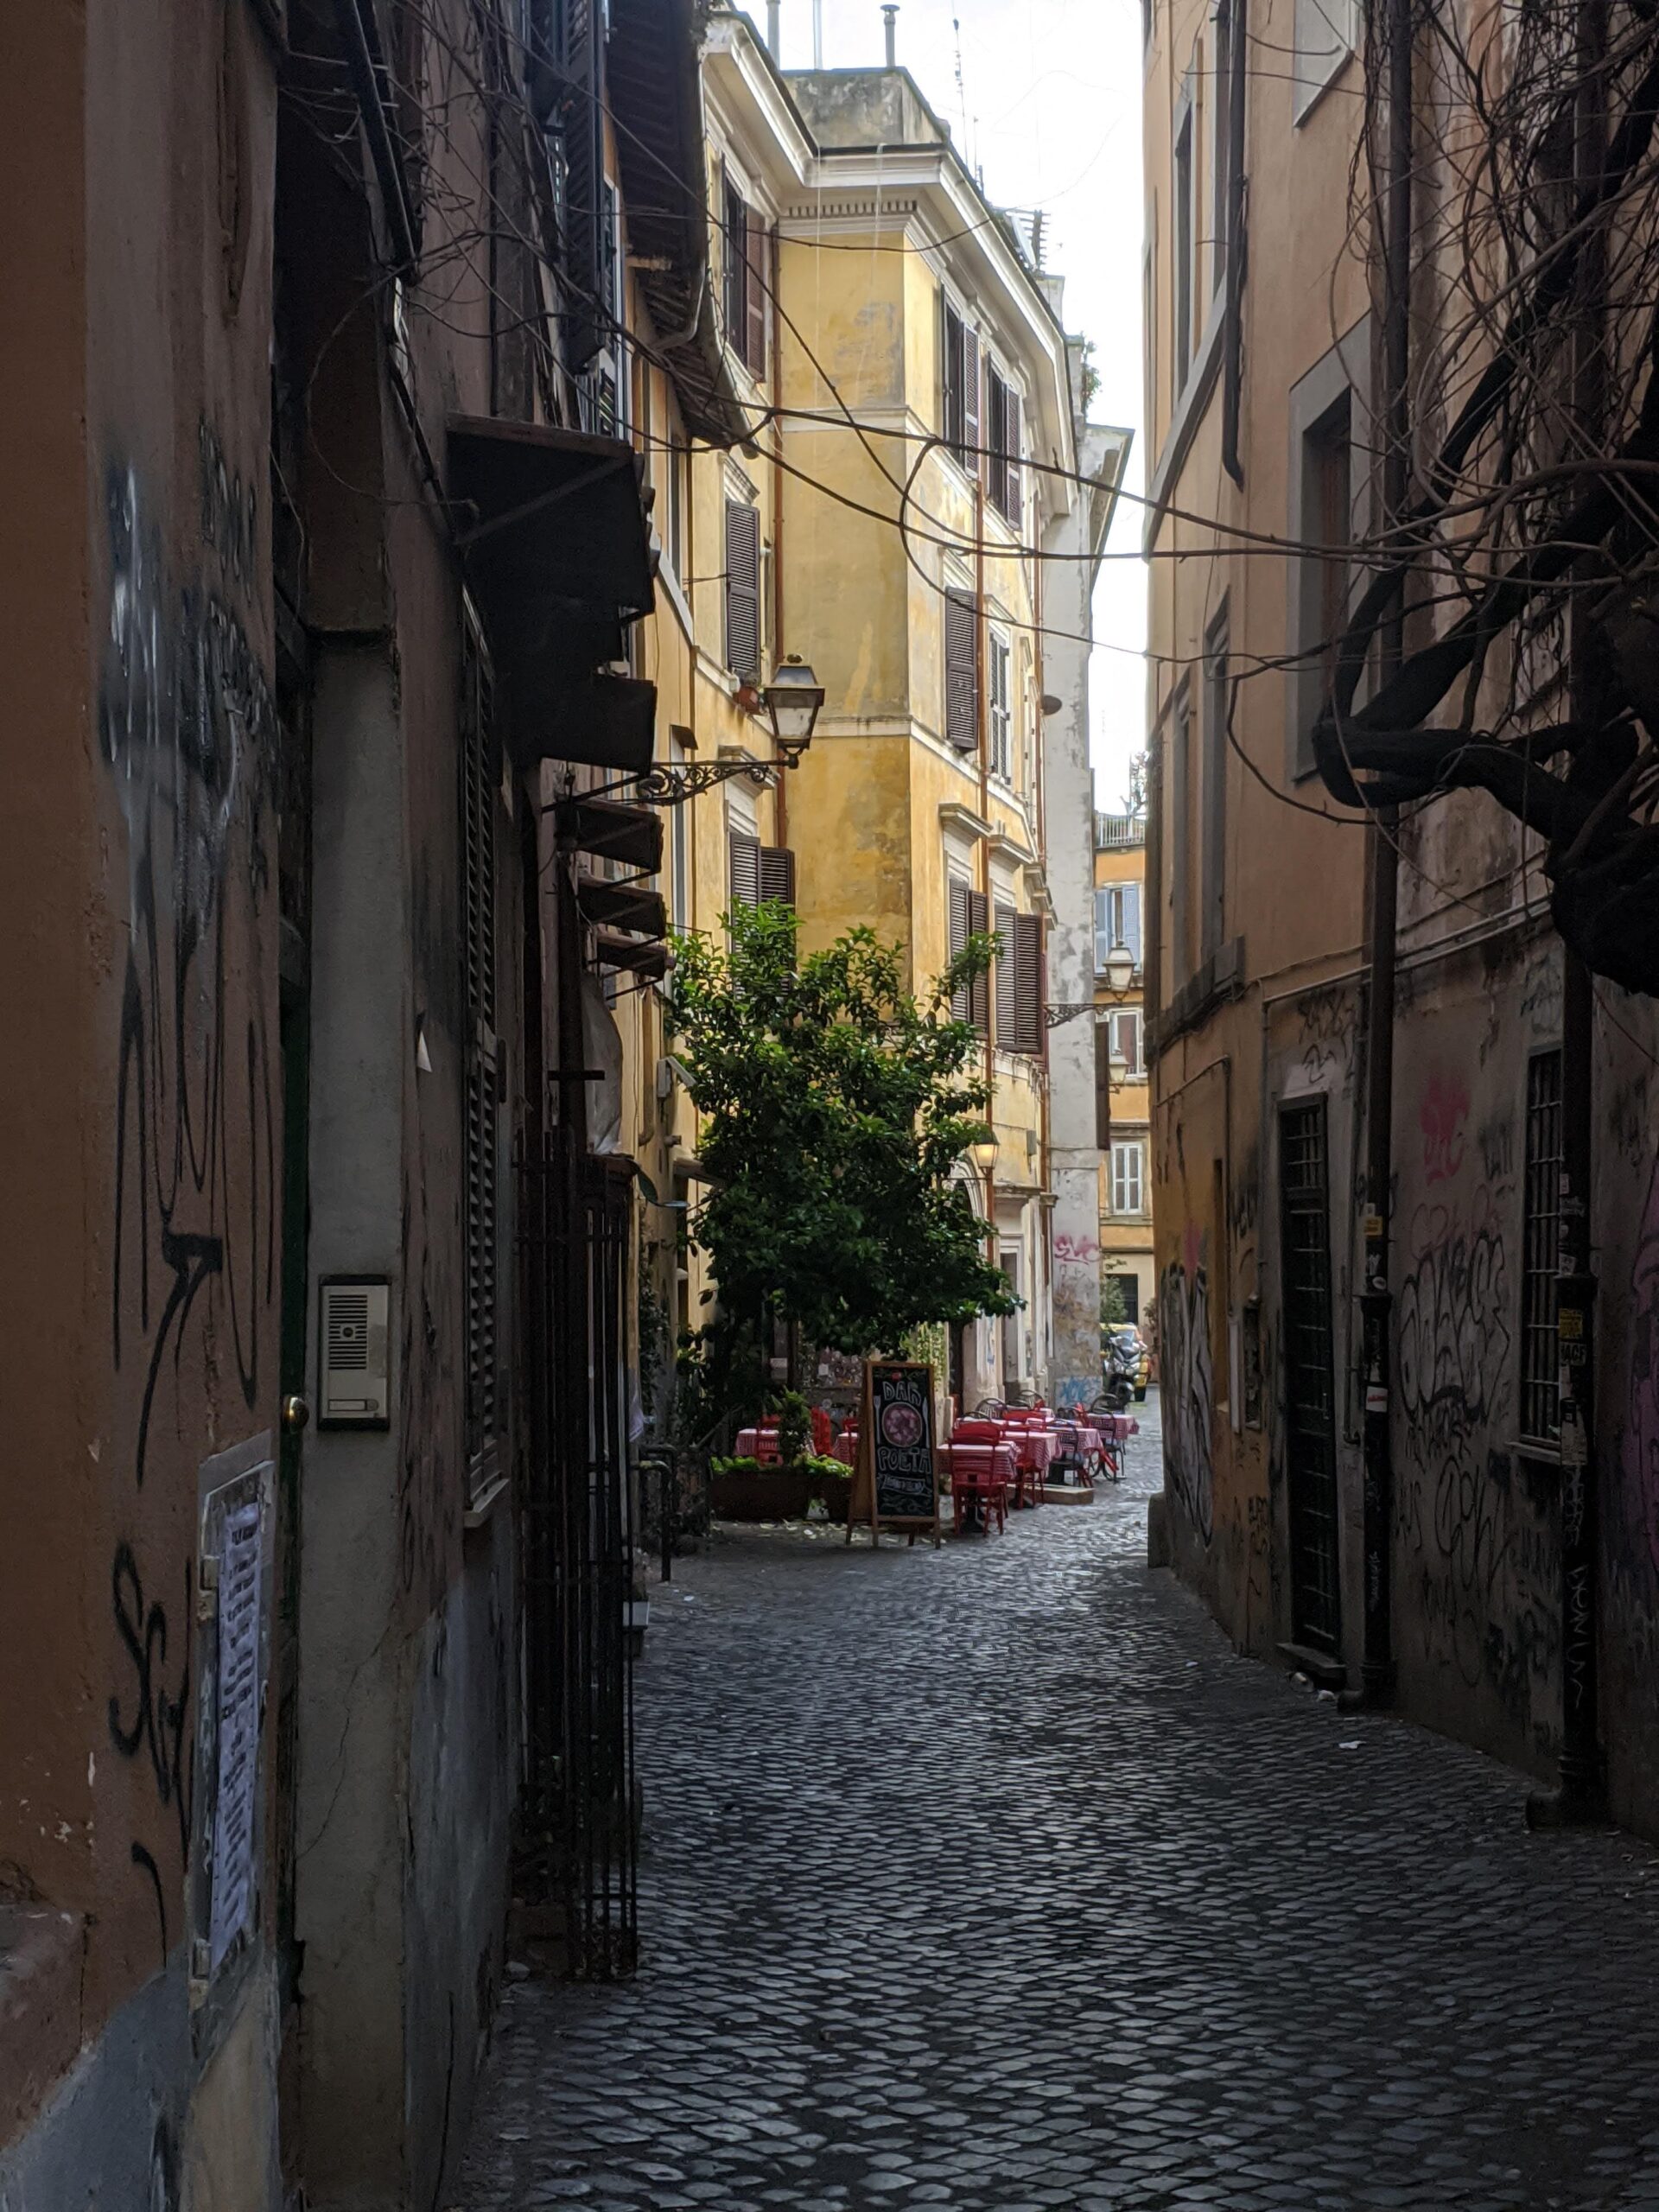 Rua de paralelepípedos em Trastevere ao amanhecer, com edifícios históricos desgastados pelas intempéries e a tranquilidade de uma manhã sem a agitação costumeira, apenas algumas mesas de café dispostas na calçada.